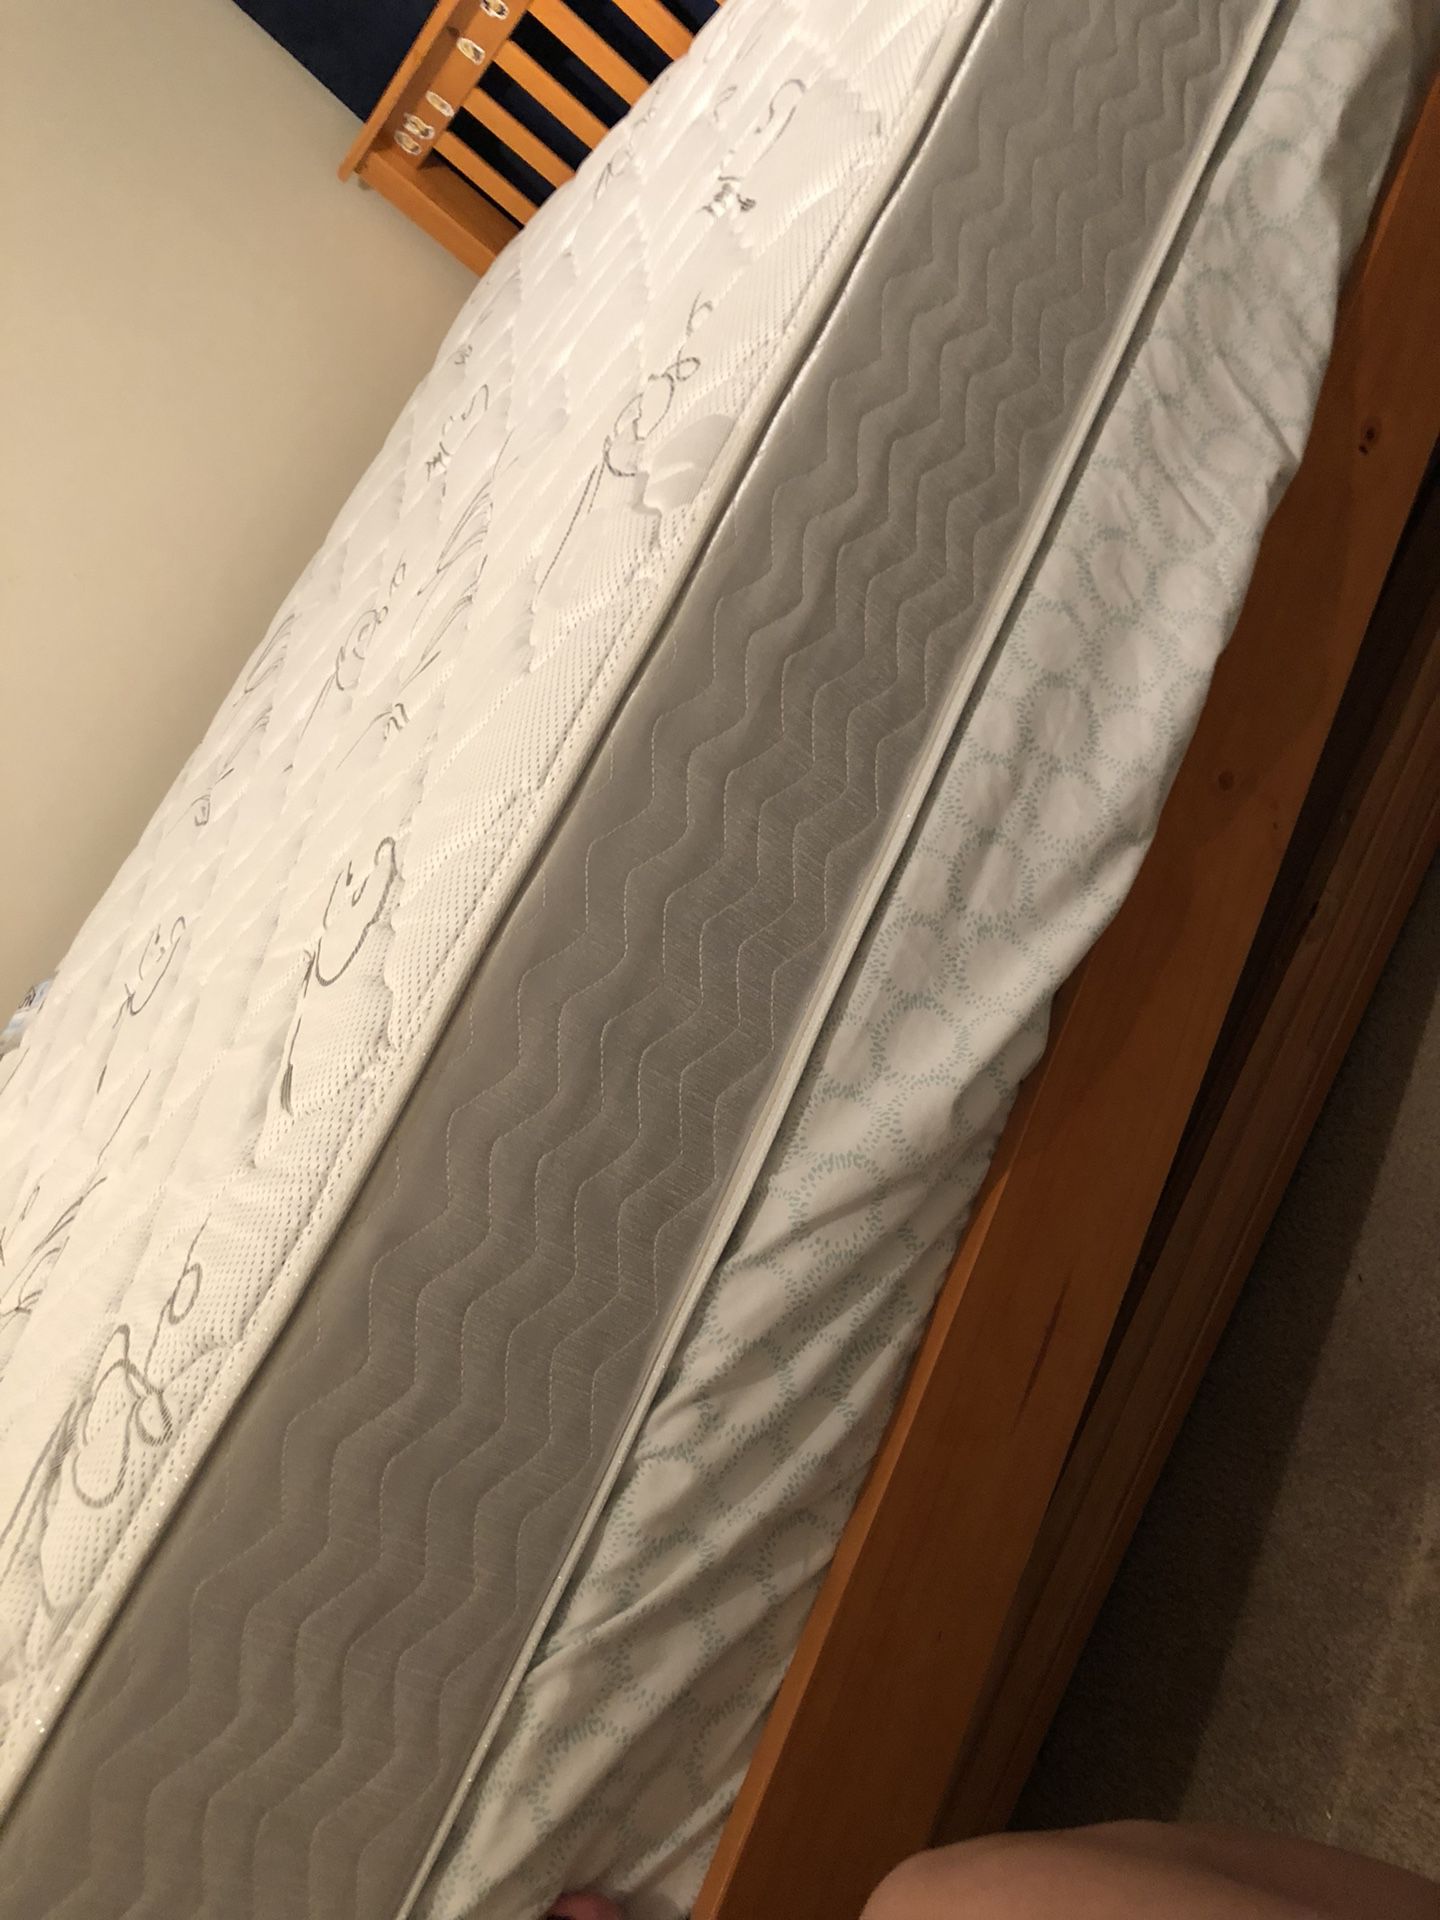 2 full over mattresses like new. $ 100 each